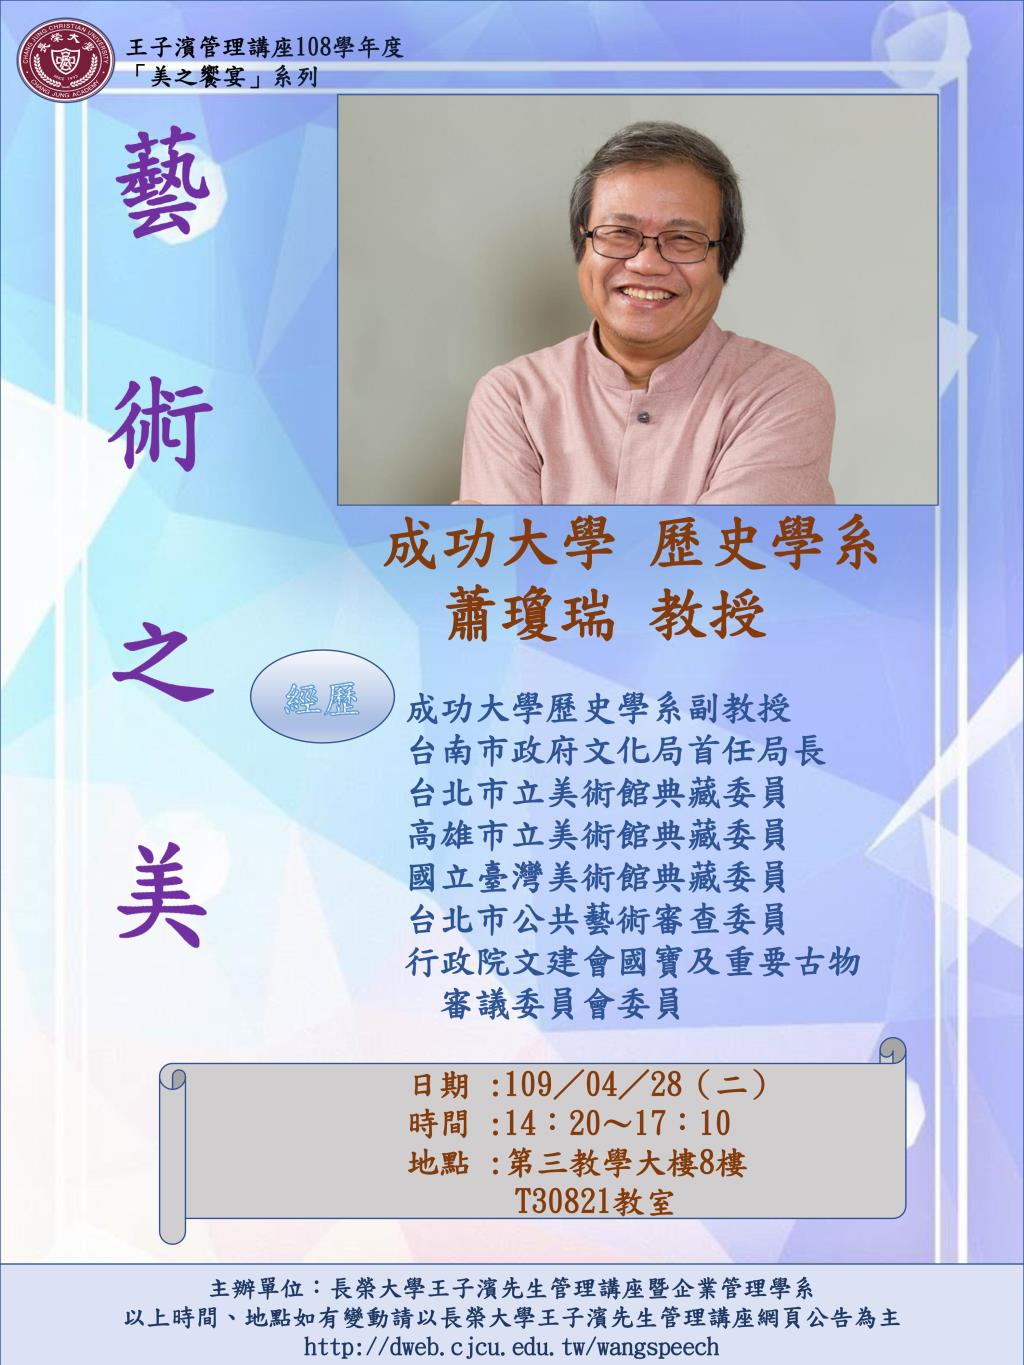 敬邀參加本週二下午(04/28)王子濱先生管理講---藝術之美_蕭瓊瑞 教授 專題演講